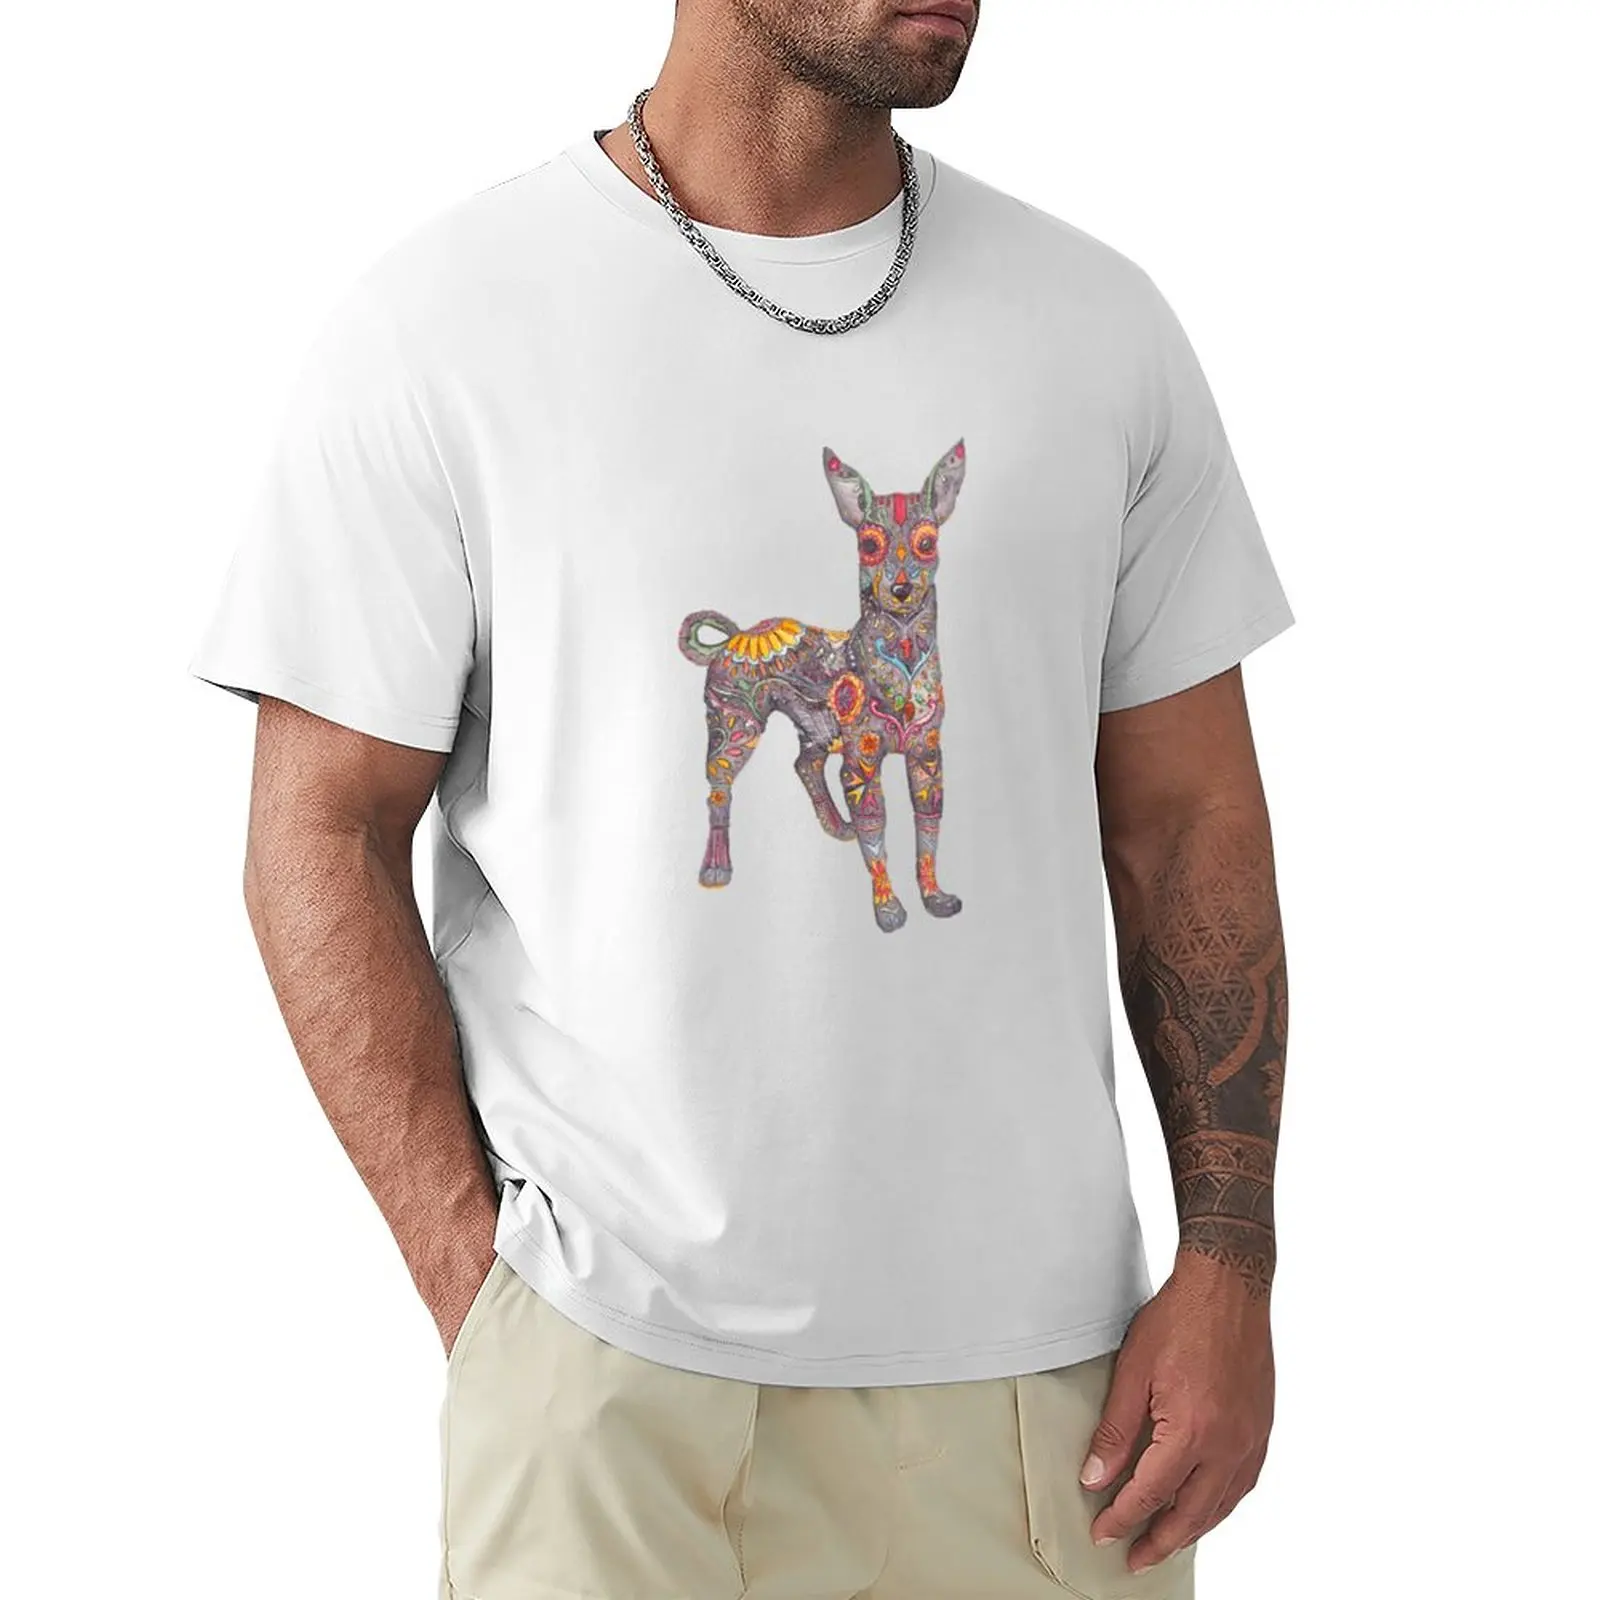 Day of the dead xolo - яркая футболка, эстетичная одежда, футболки, комплект мужских футболок